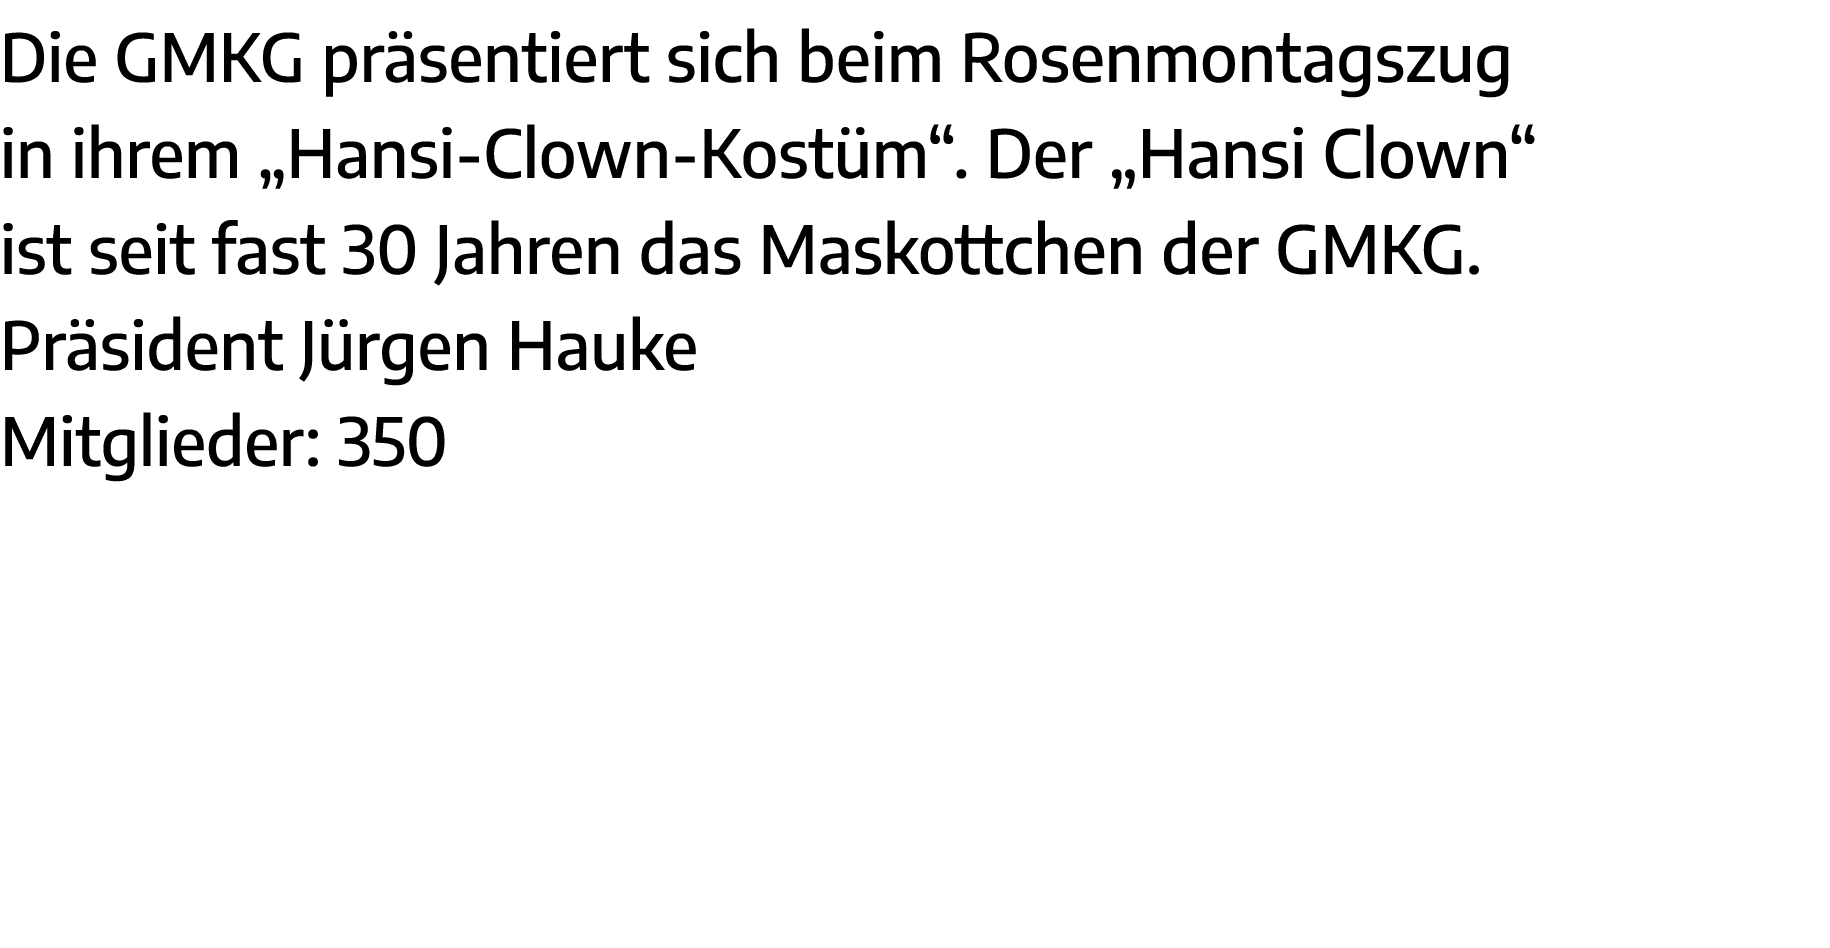 Die GMKG präsentiert sich beim Rosenmontagszug in ihrem  Hansi-Clown-Kostüm   Der  Hansi Clown  ist seit fast 30 Jahr   